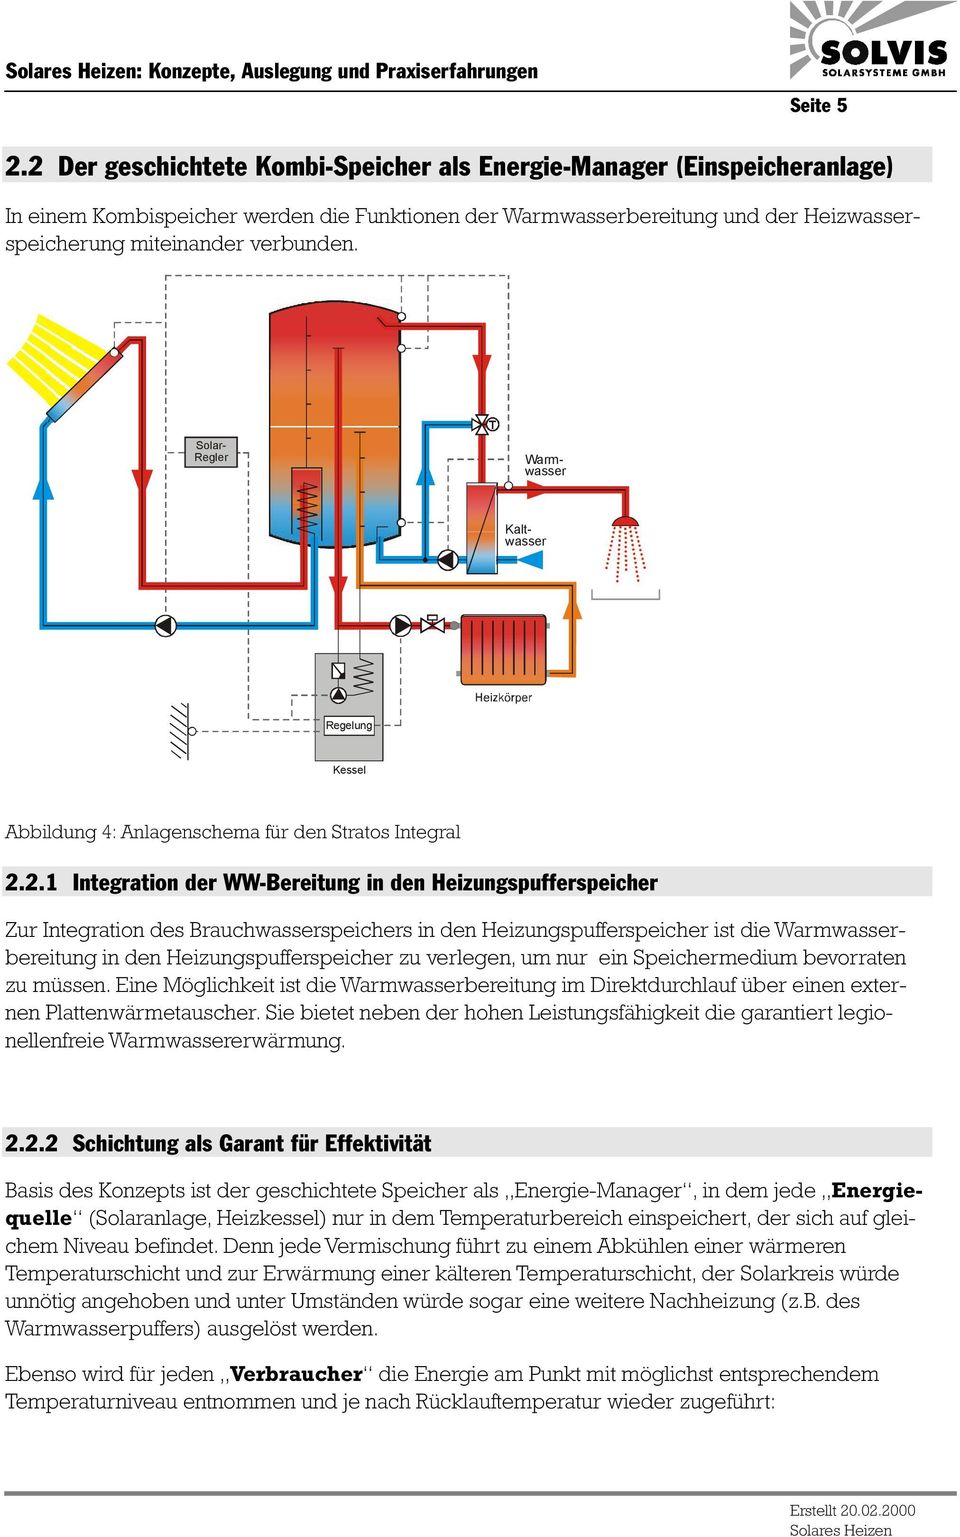 Kaltwasser Solar- Regler Warmwasser Regelung Kessel Abbildung 4: Anlagenschema für den Stratos Integral 2.